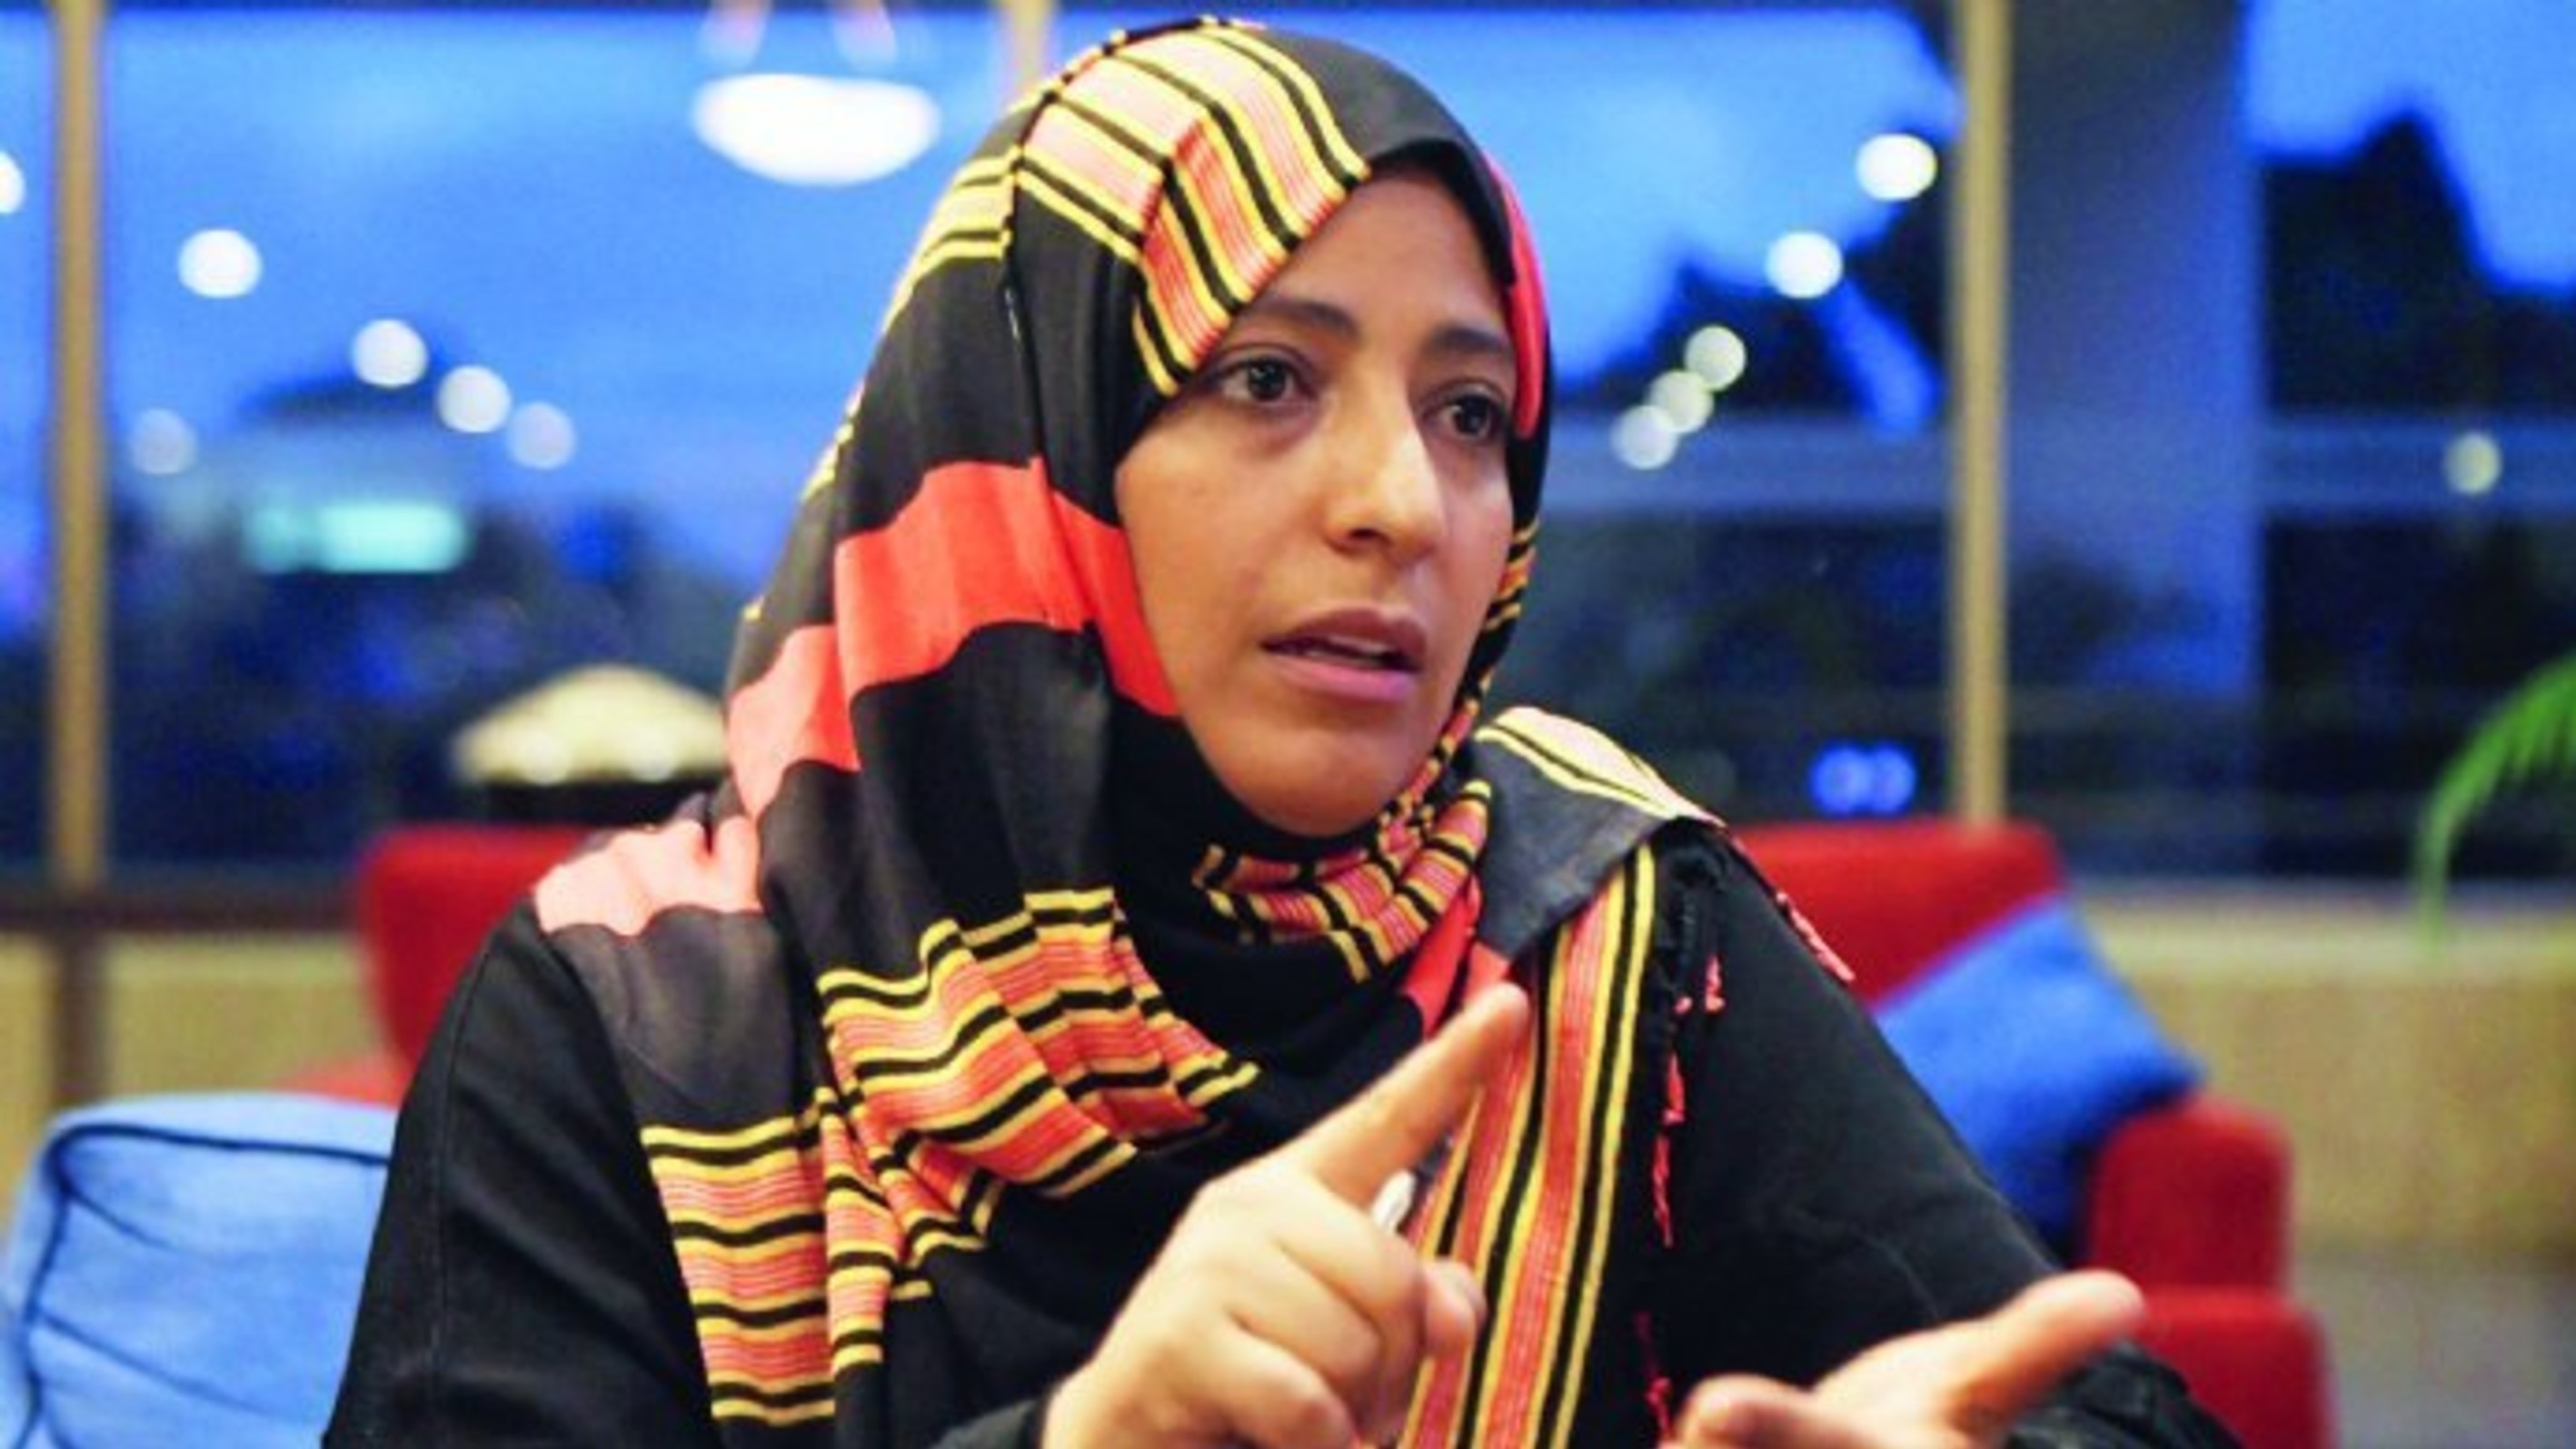 حوار الناشطة الحائزة على جائزة نوبل للسلام توكل كرمان مع عربي21 - الجزء الثاني